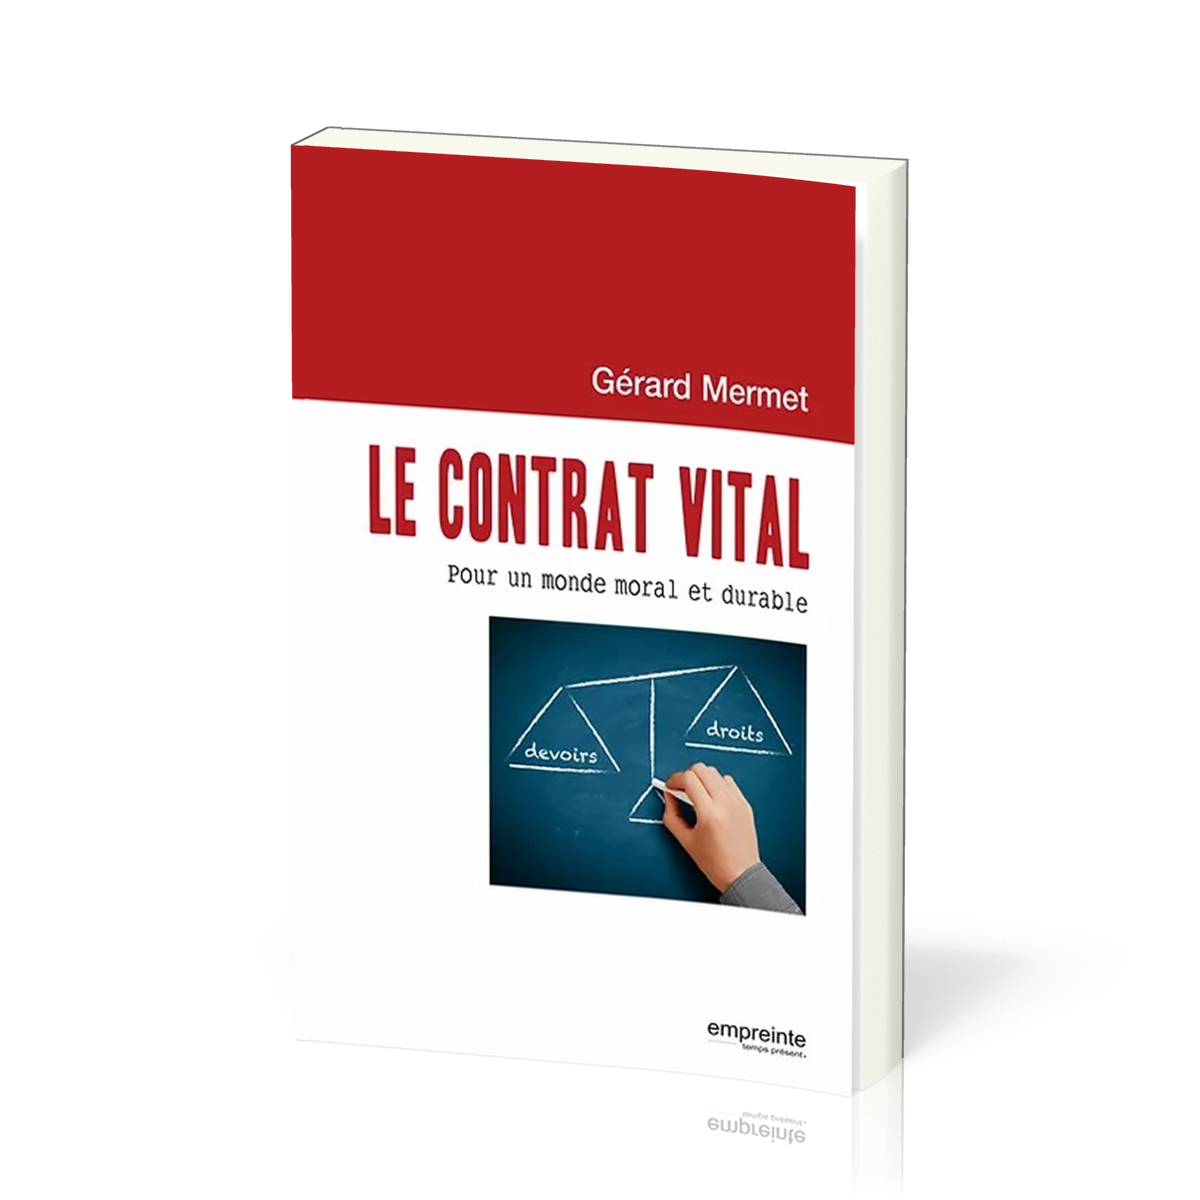 Contrat vital (Le) - Pour un monde moral et durable